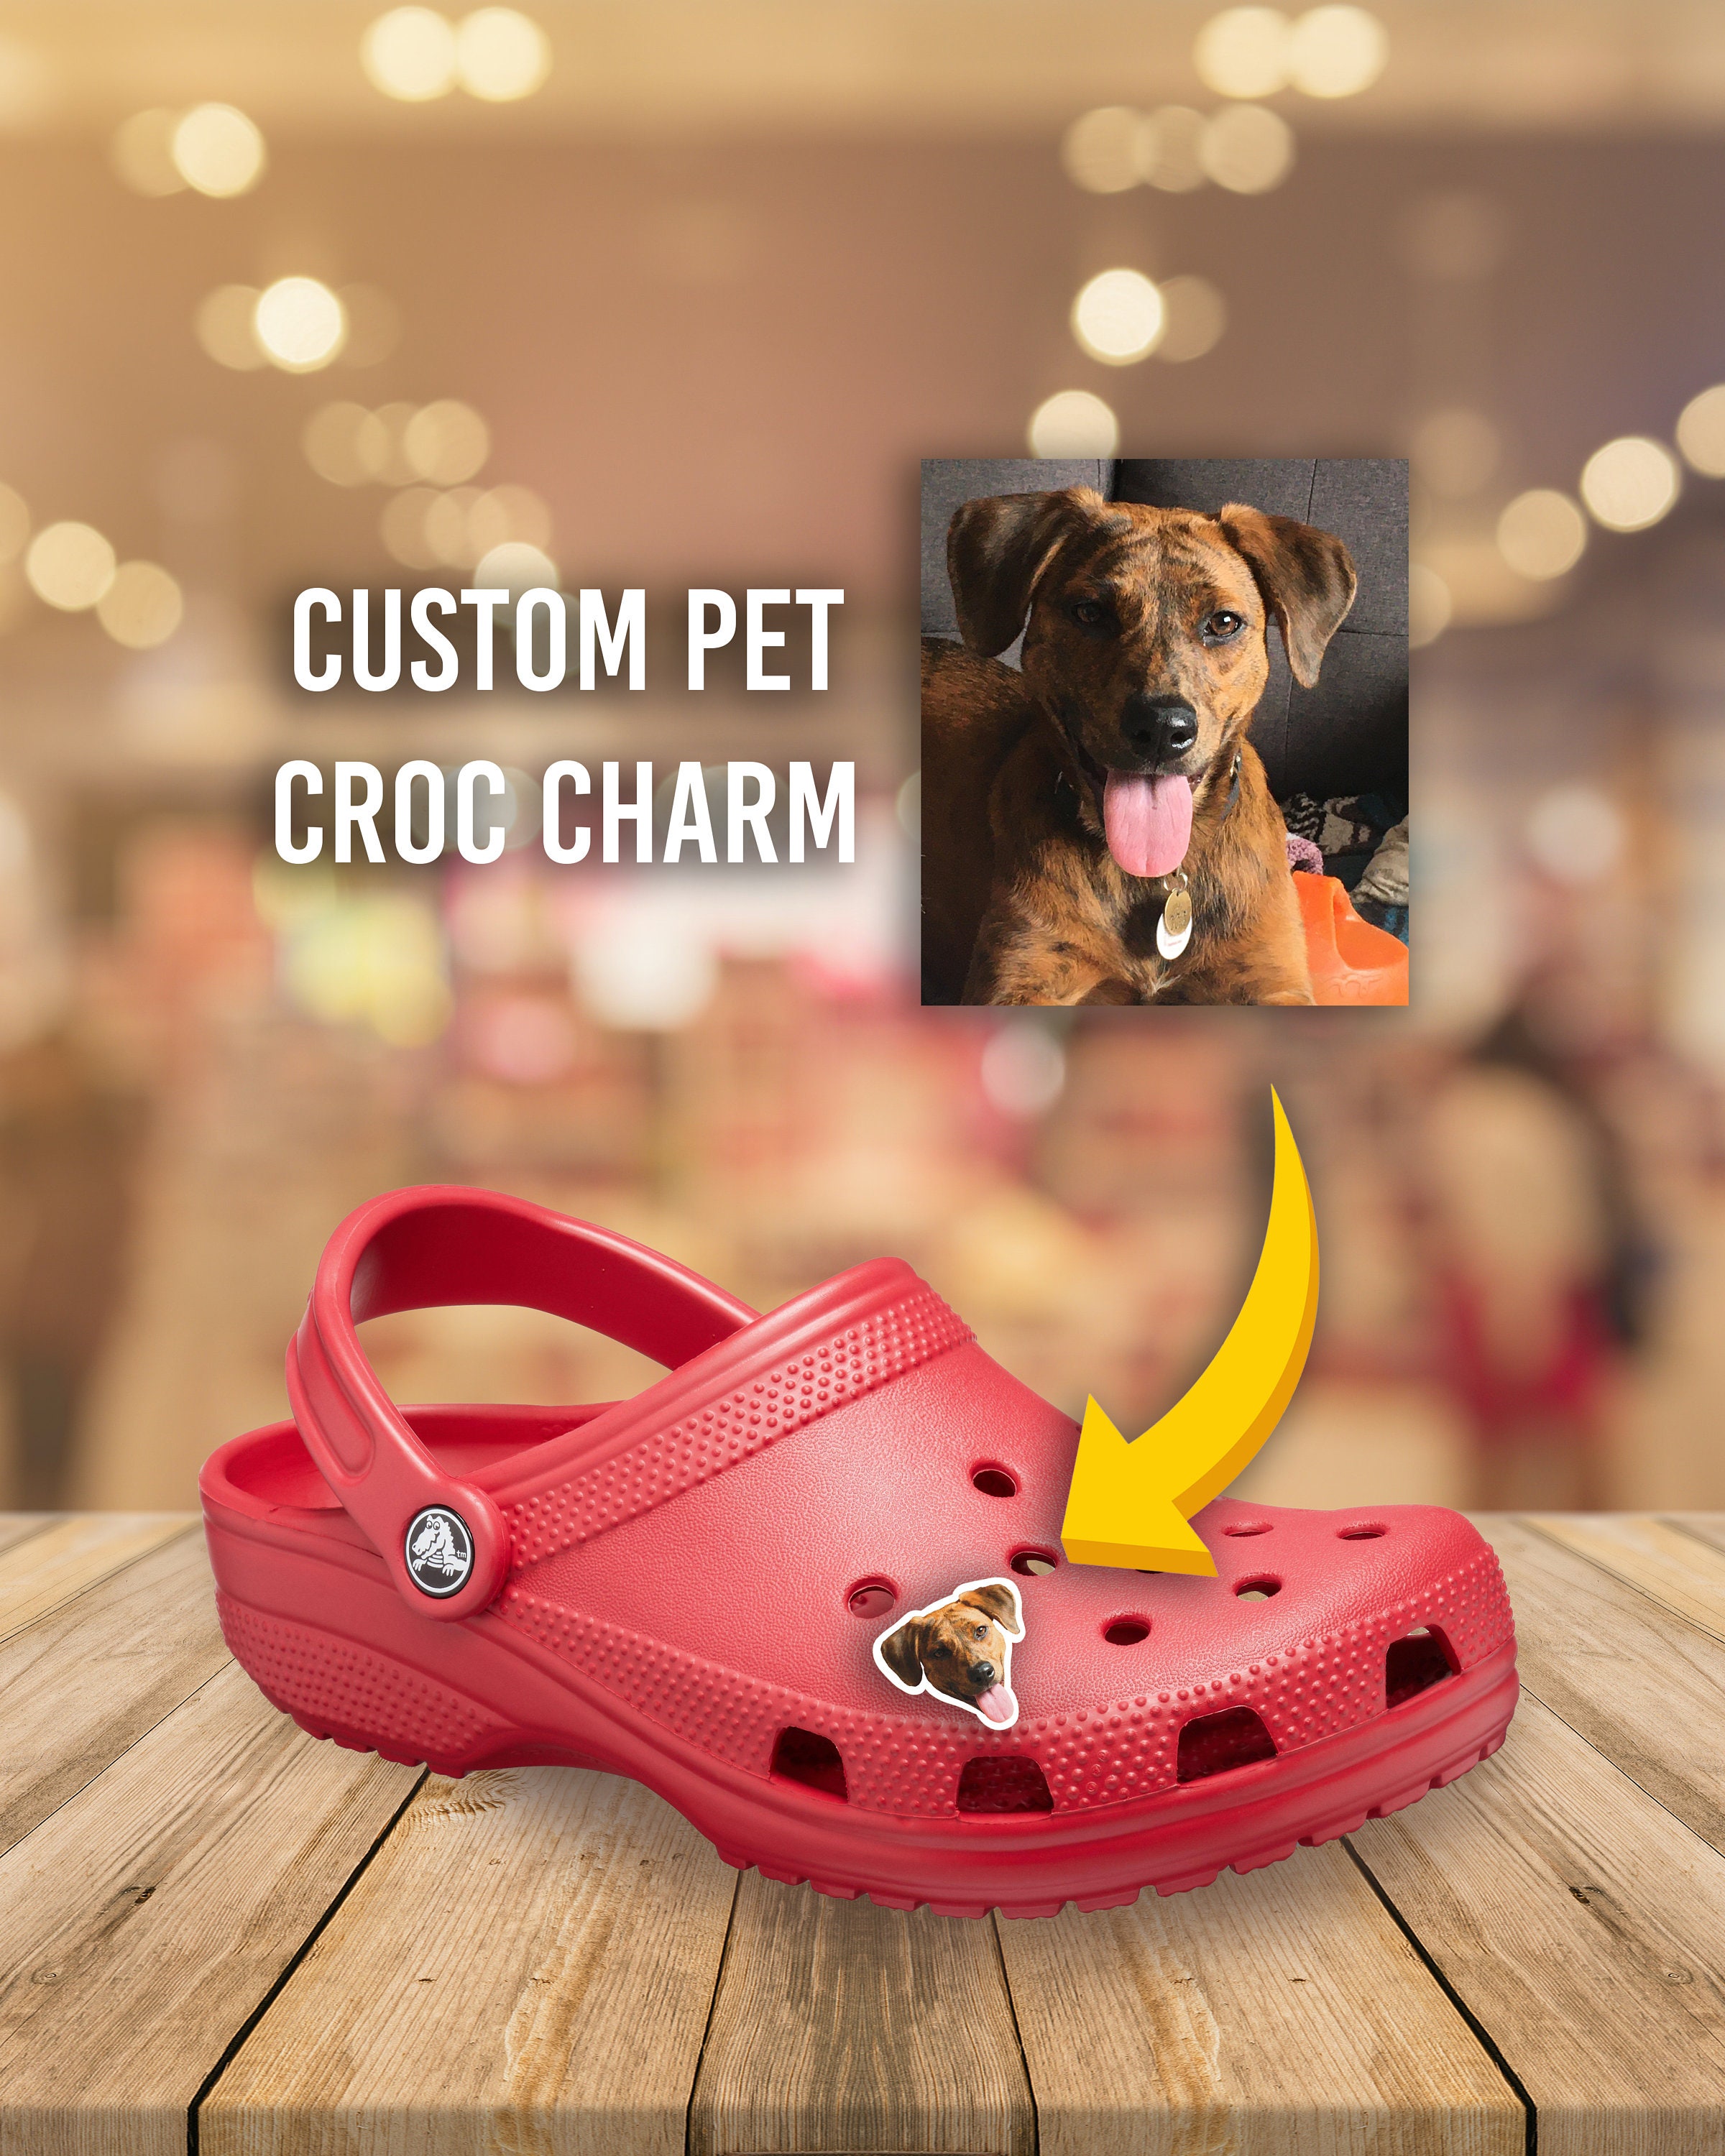 Dog Sandals, 8 Colors Optional, Puppy Shoes Crocs, Pet Sandals for